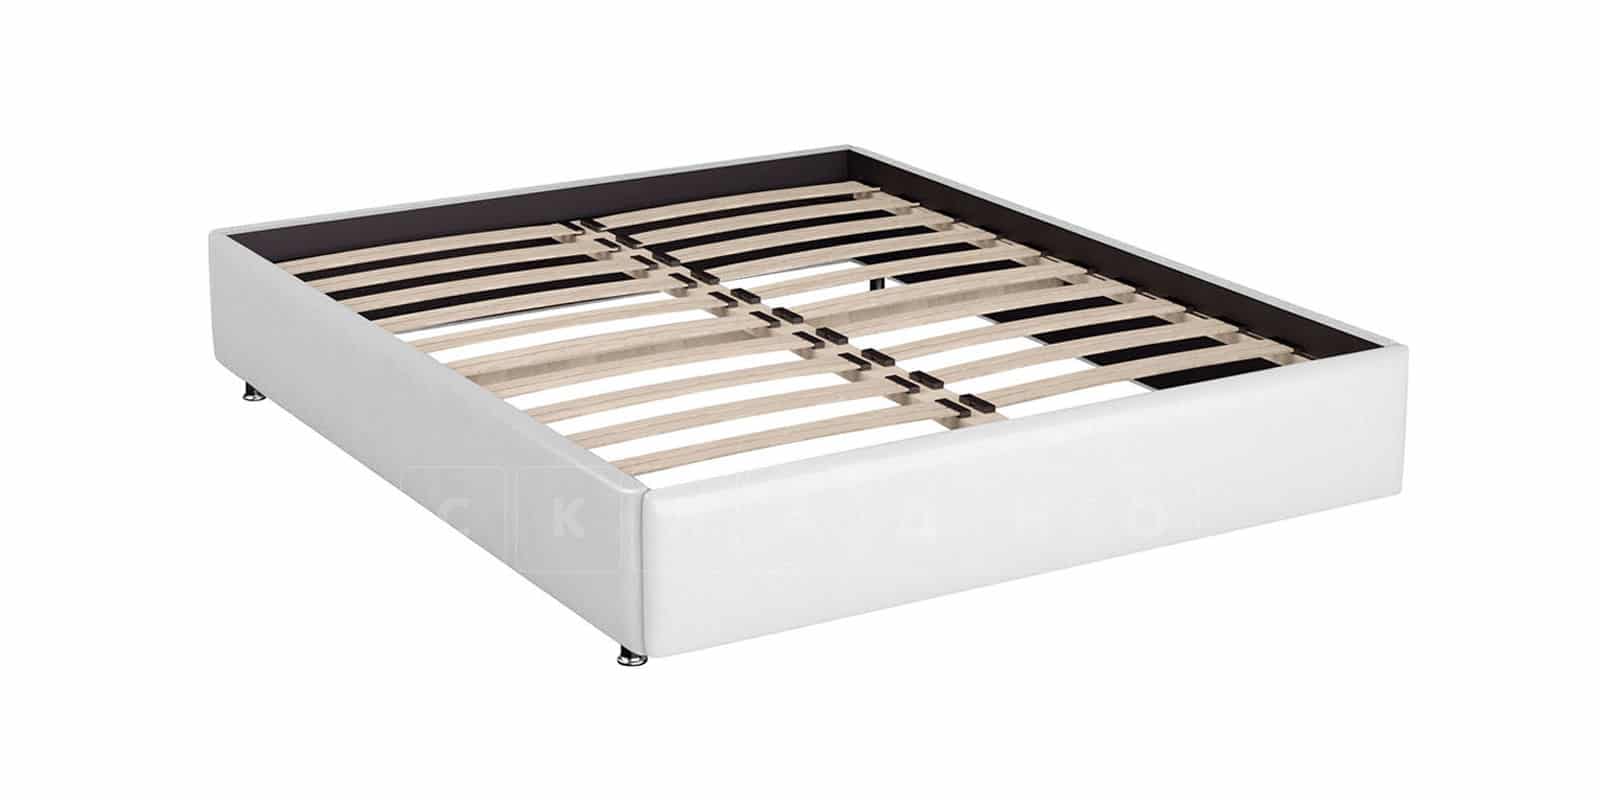 Мягкая кровать Малибу 160 см экокожа белого цвета вариант 7-2 фото 4 | интернет-магазин Складно